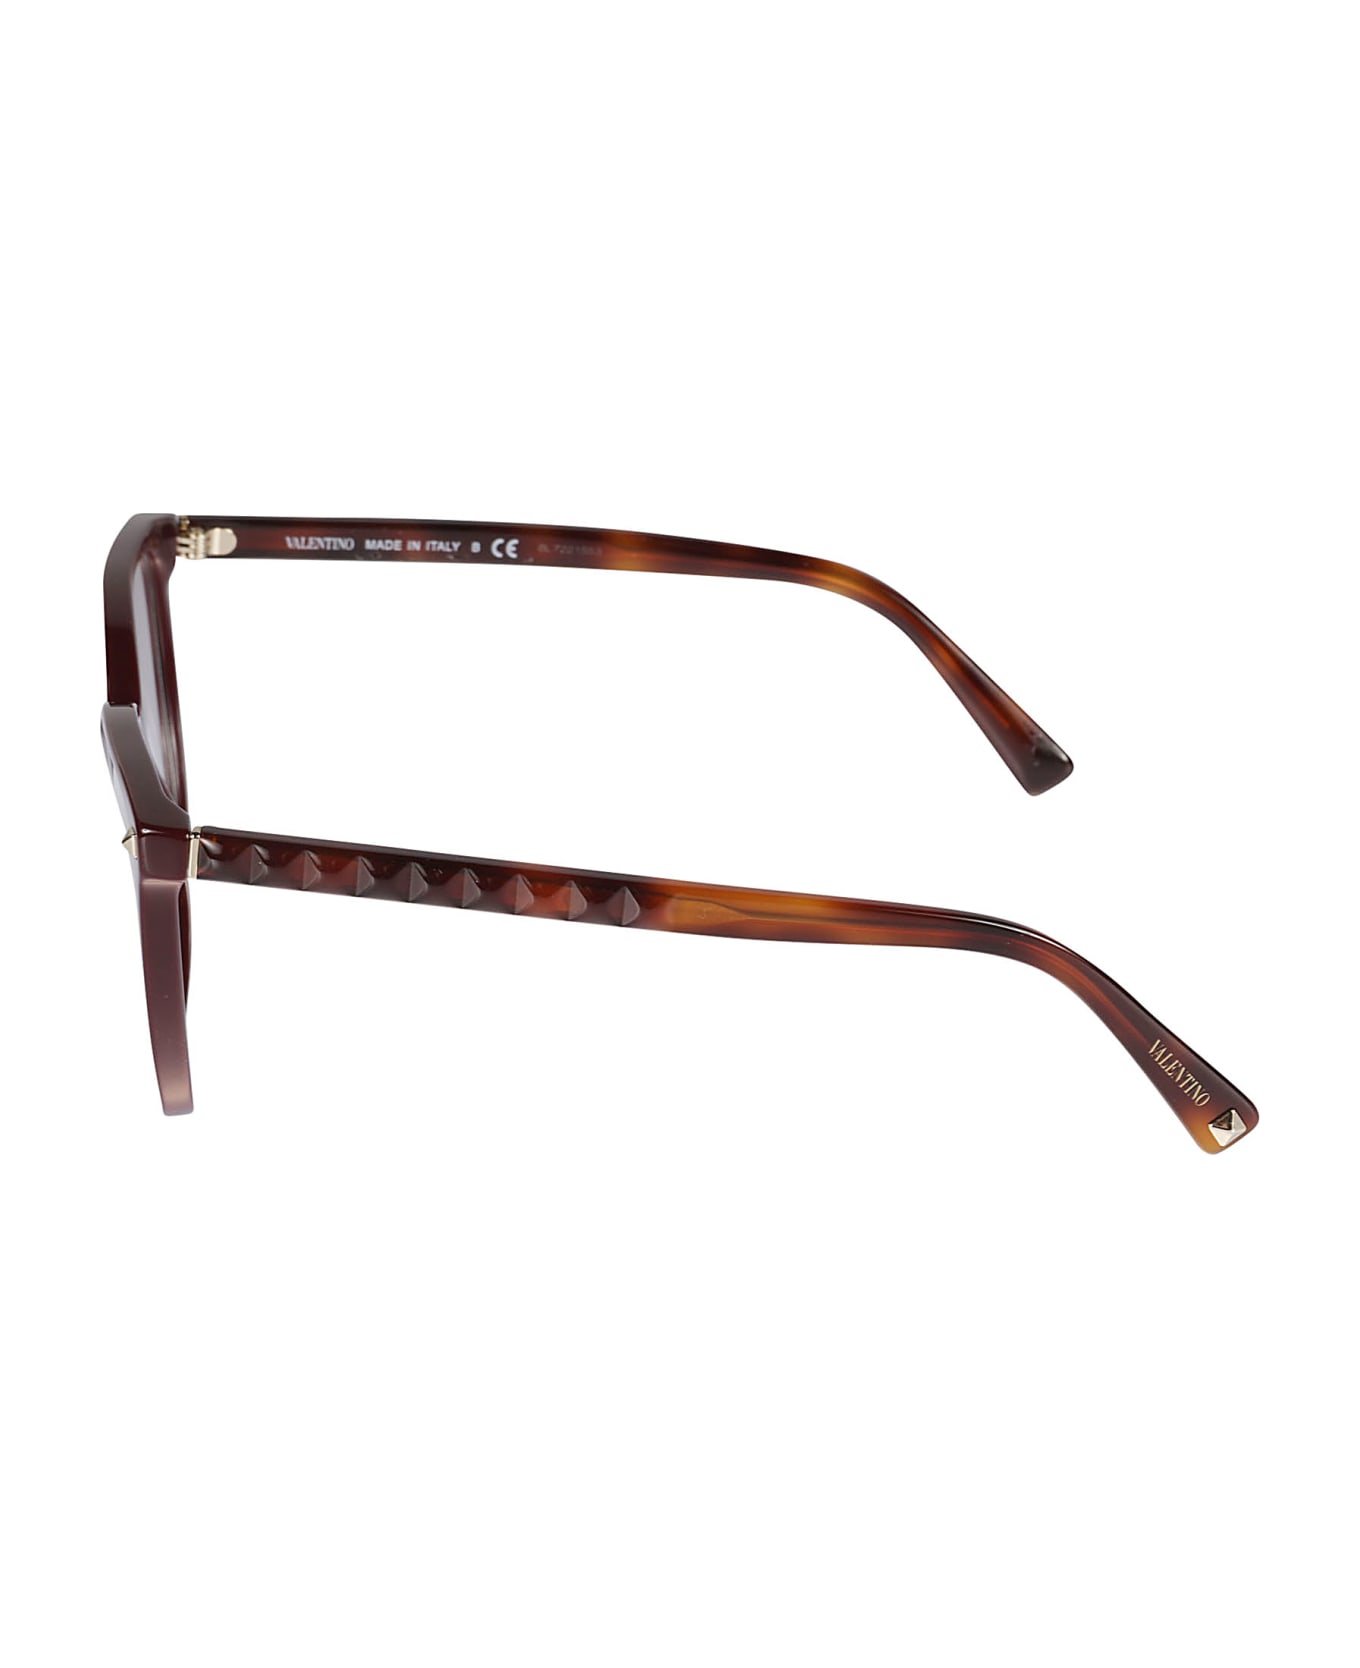 Valentino Eyewear Vista5120 Glasses - 5120